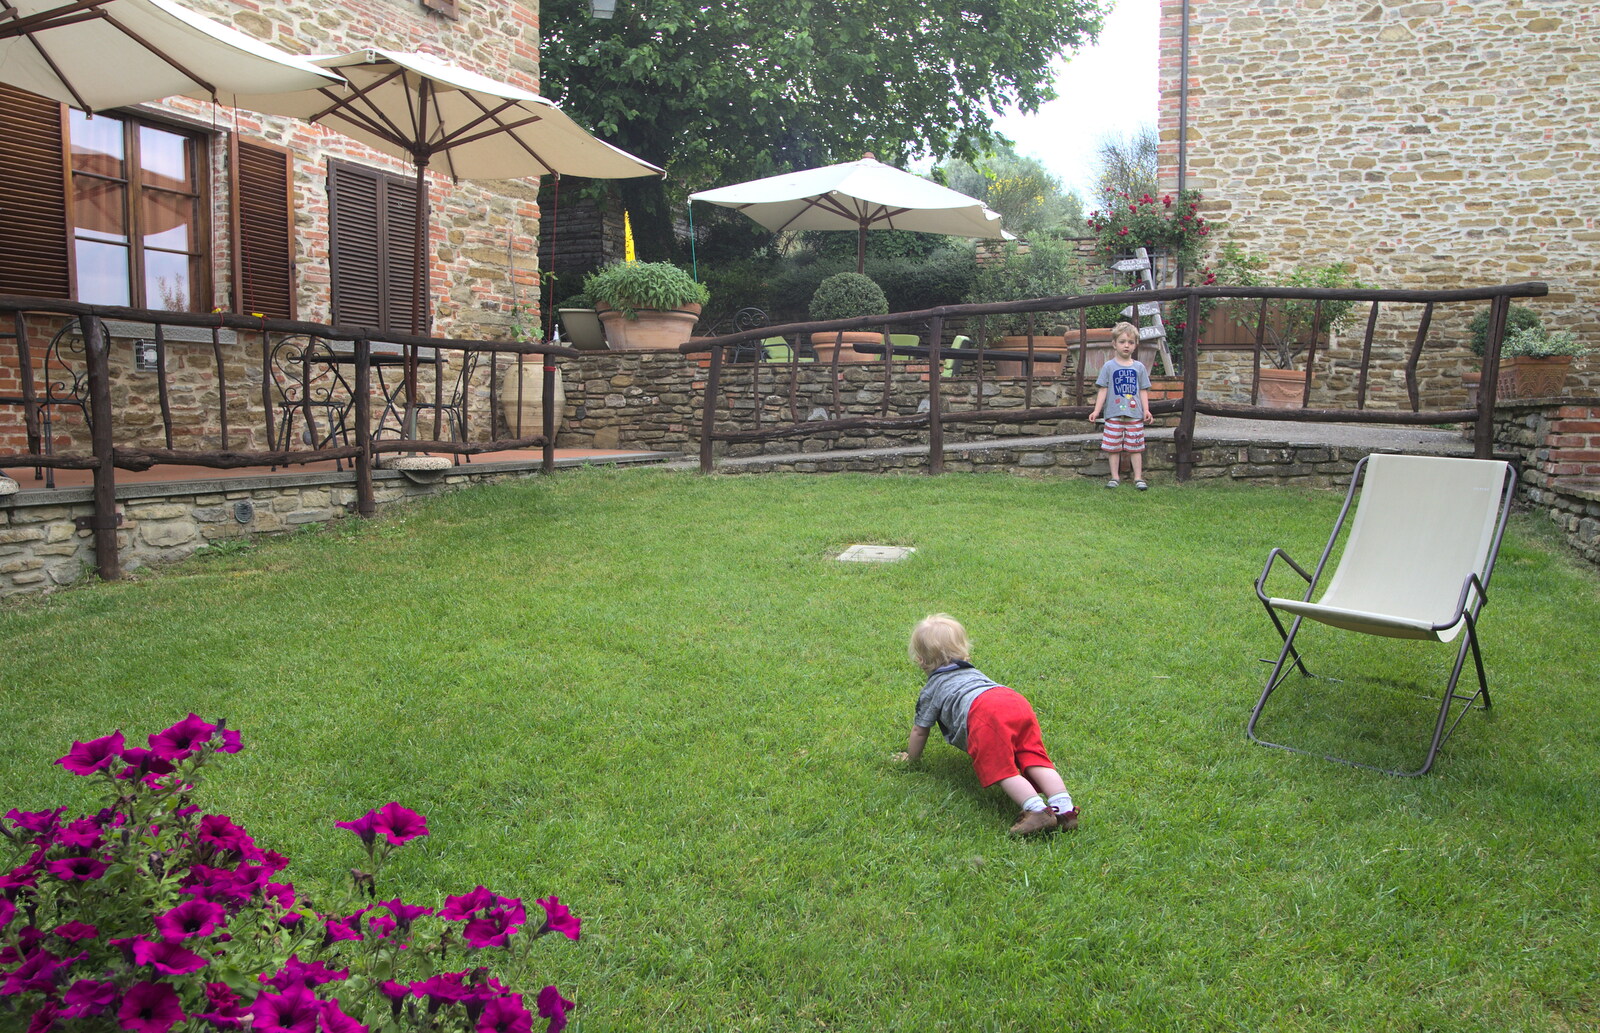 Marconi, Arezzo and the Sagra del Maccherone Festival, Battifolle, Tuscany - 9th June 2013: Harry roams around